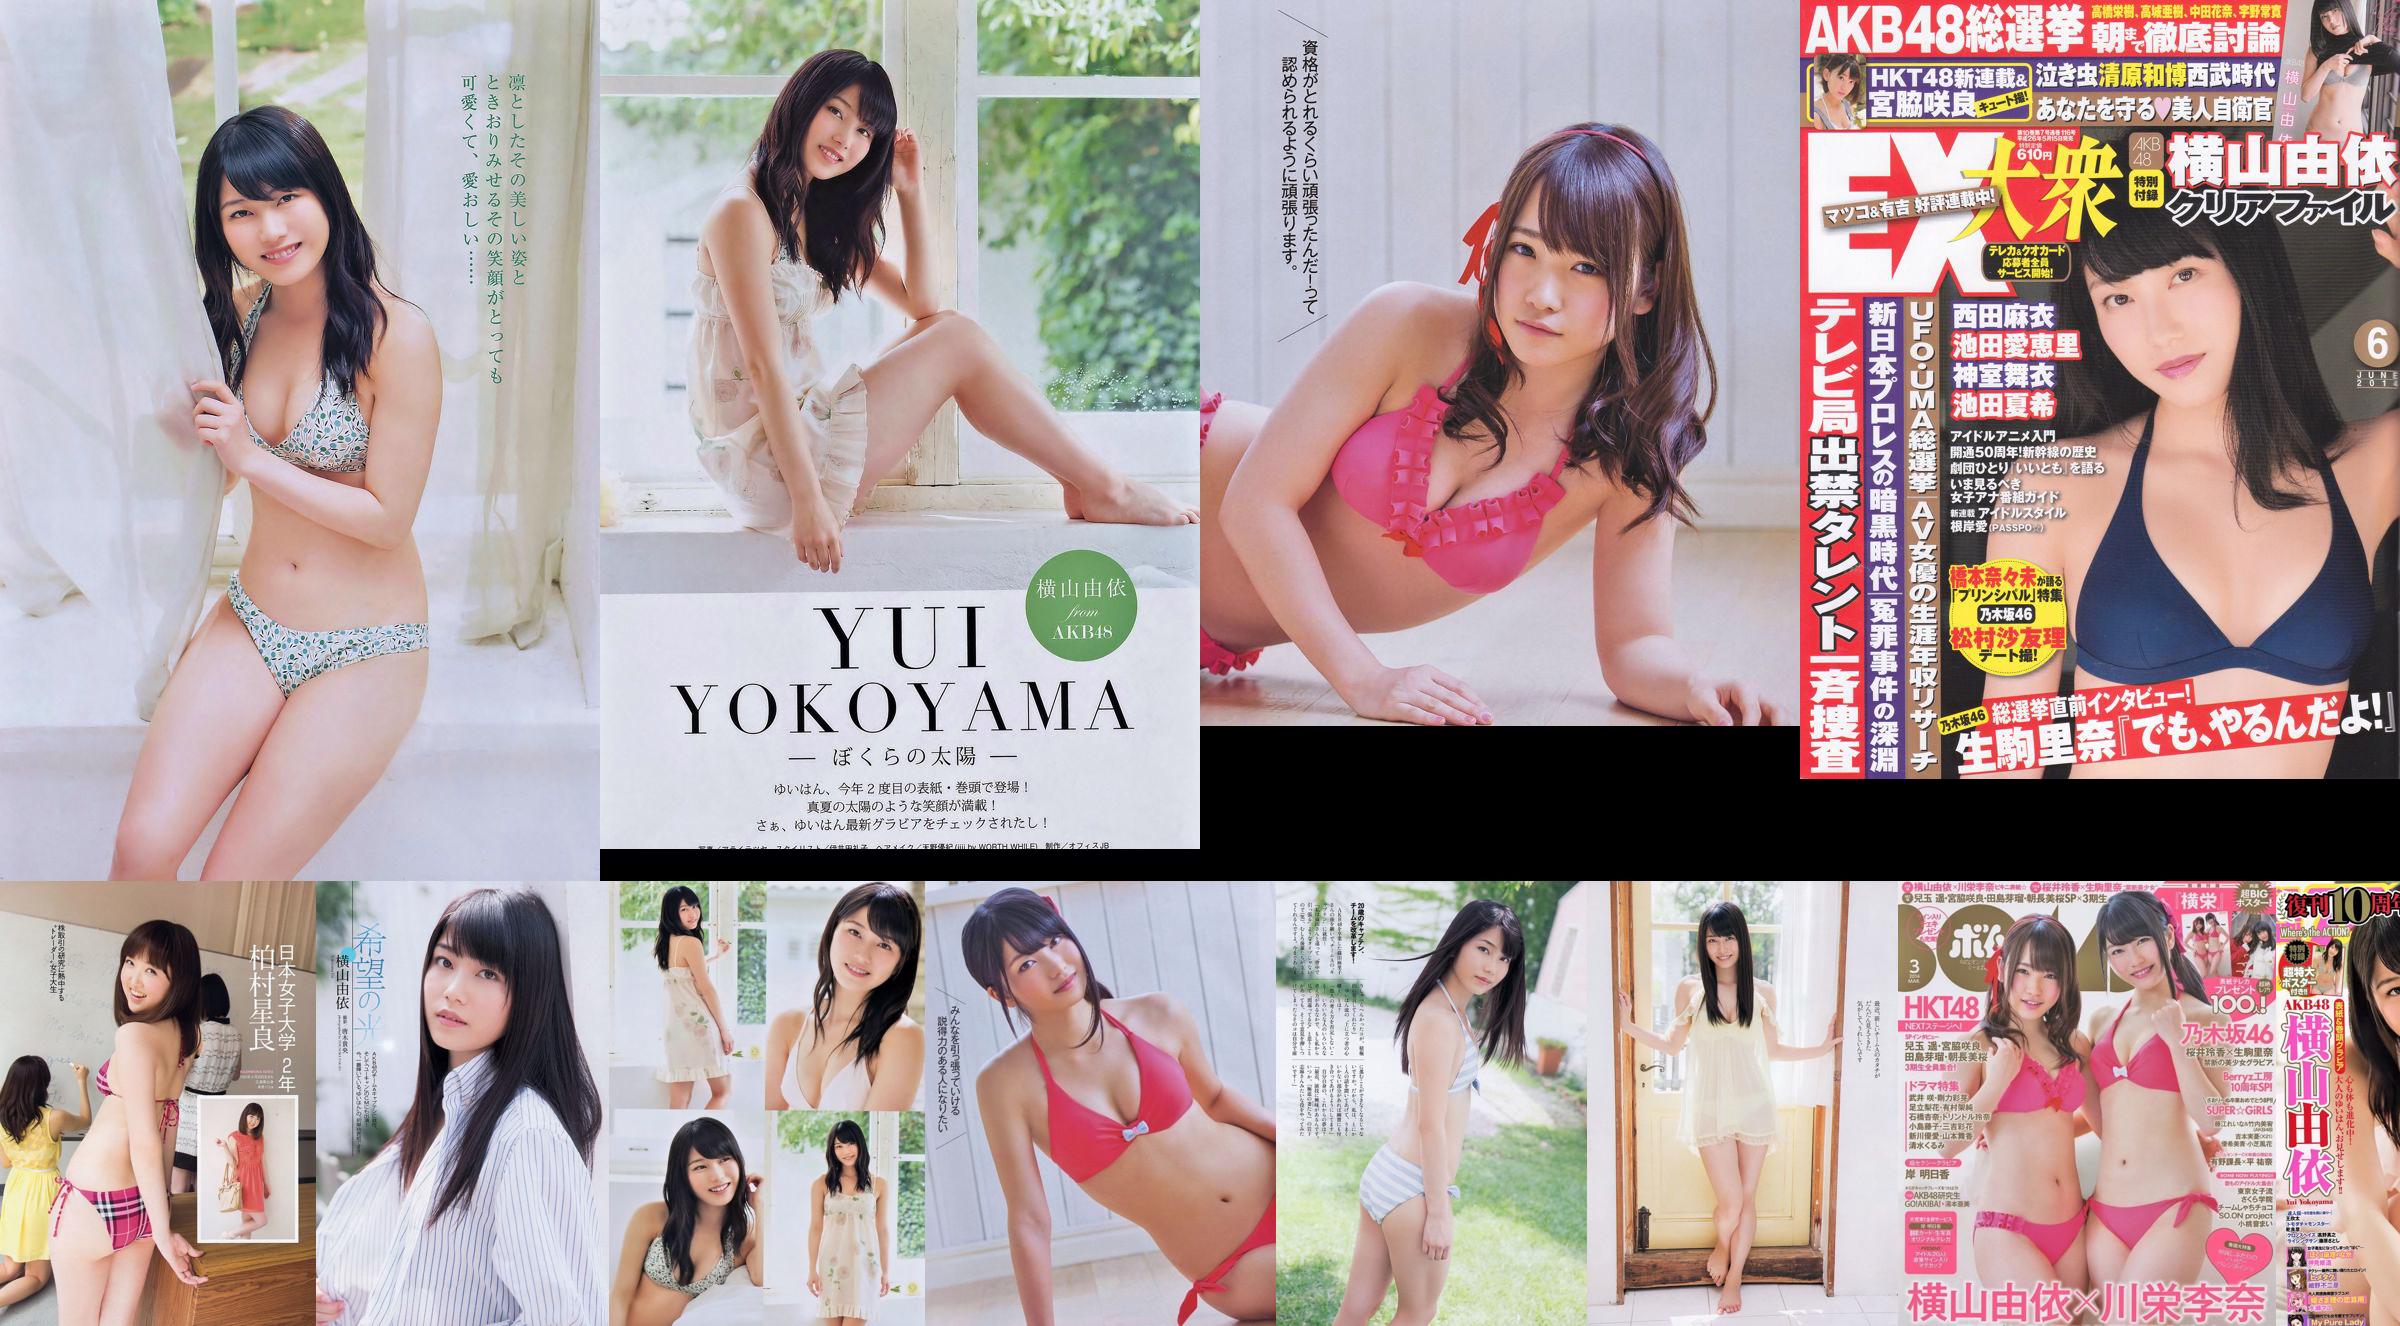 Momoiro Clover Z Yui Yokoyama Yua Shinkawa Mio Uema Anri Sugihara Kumi Yagami [Weekly Playboy] 2013 No.20 Photo Moshi No.08c005 Page 10